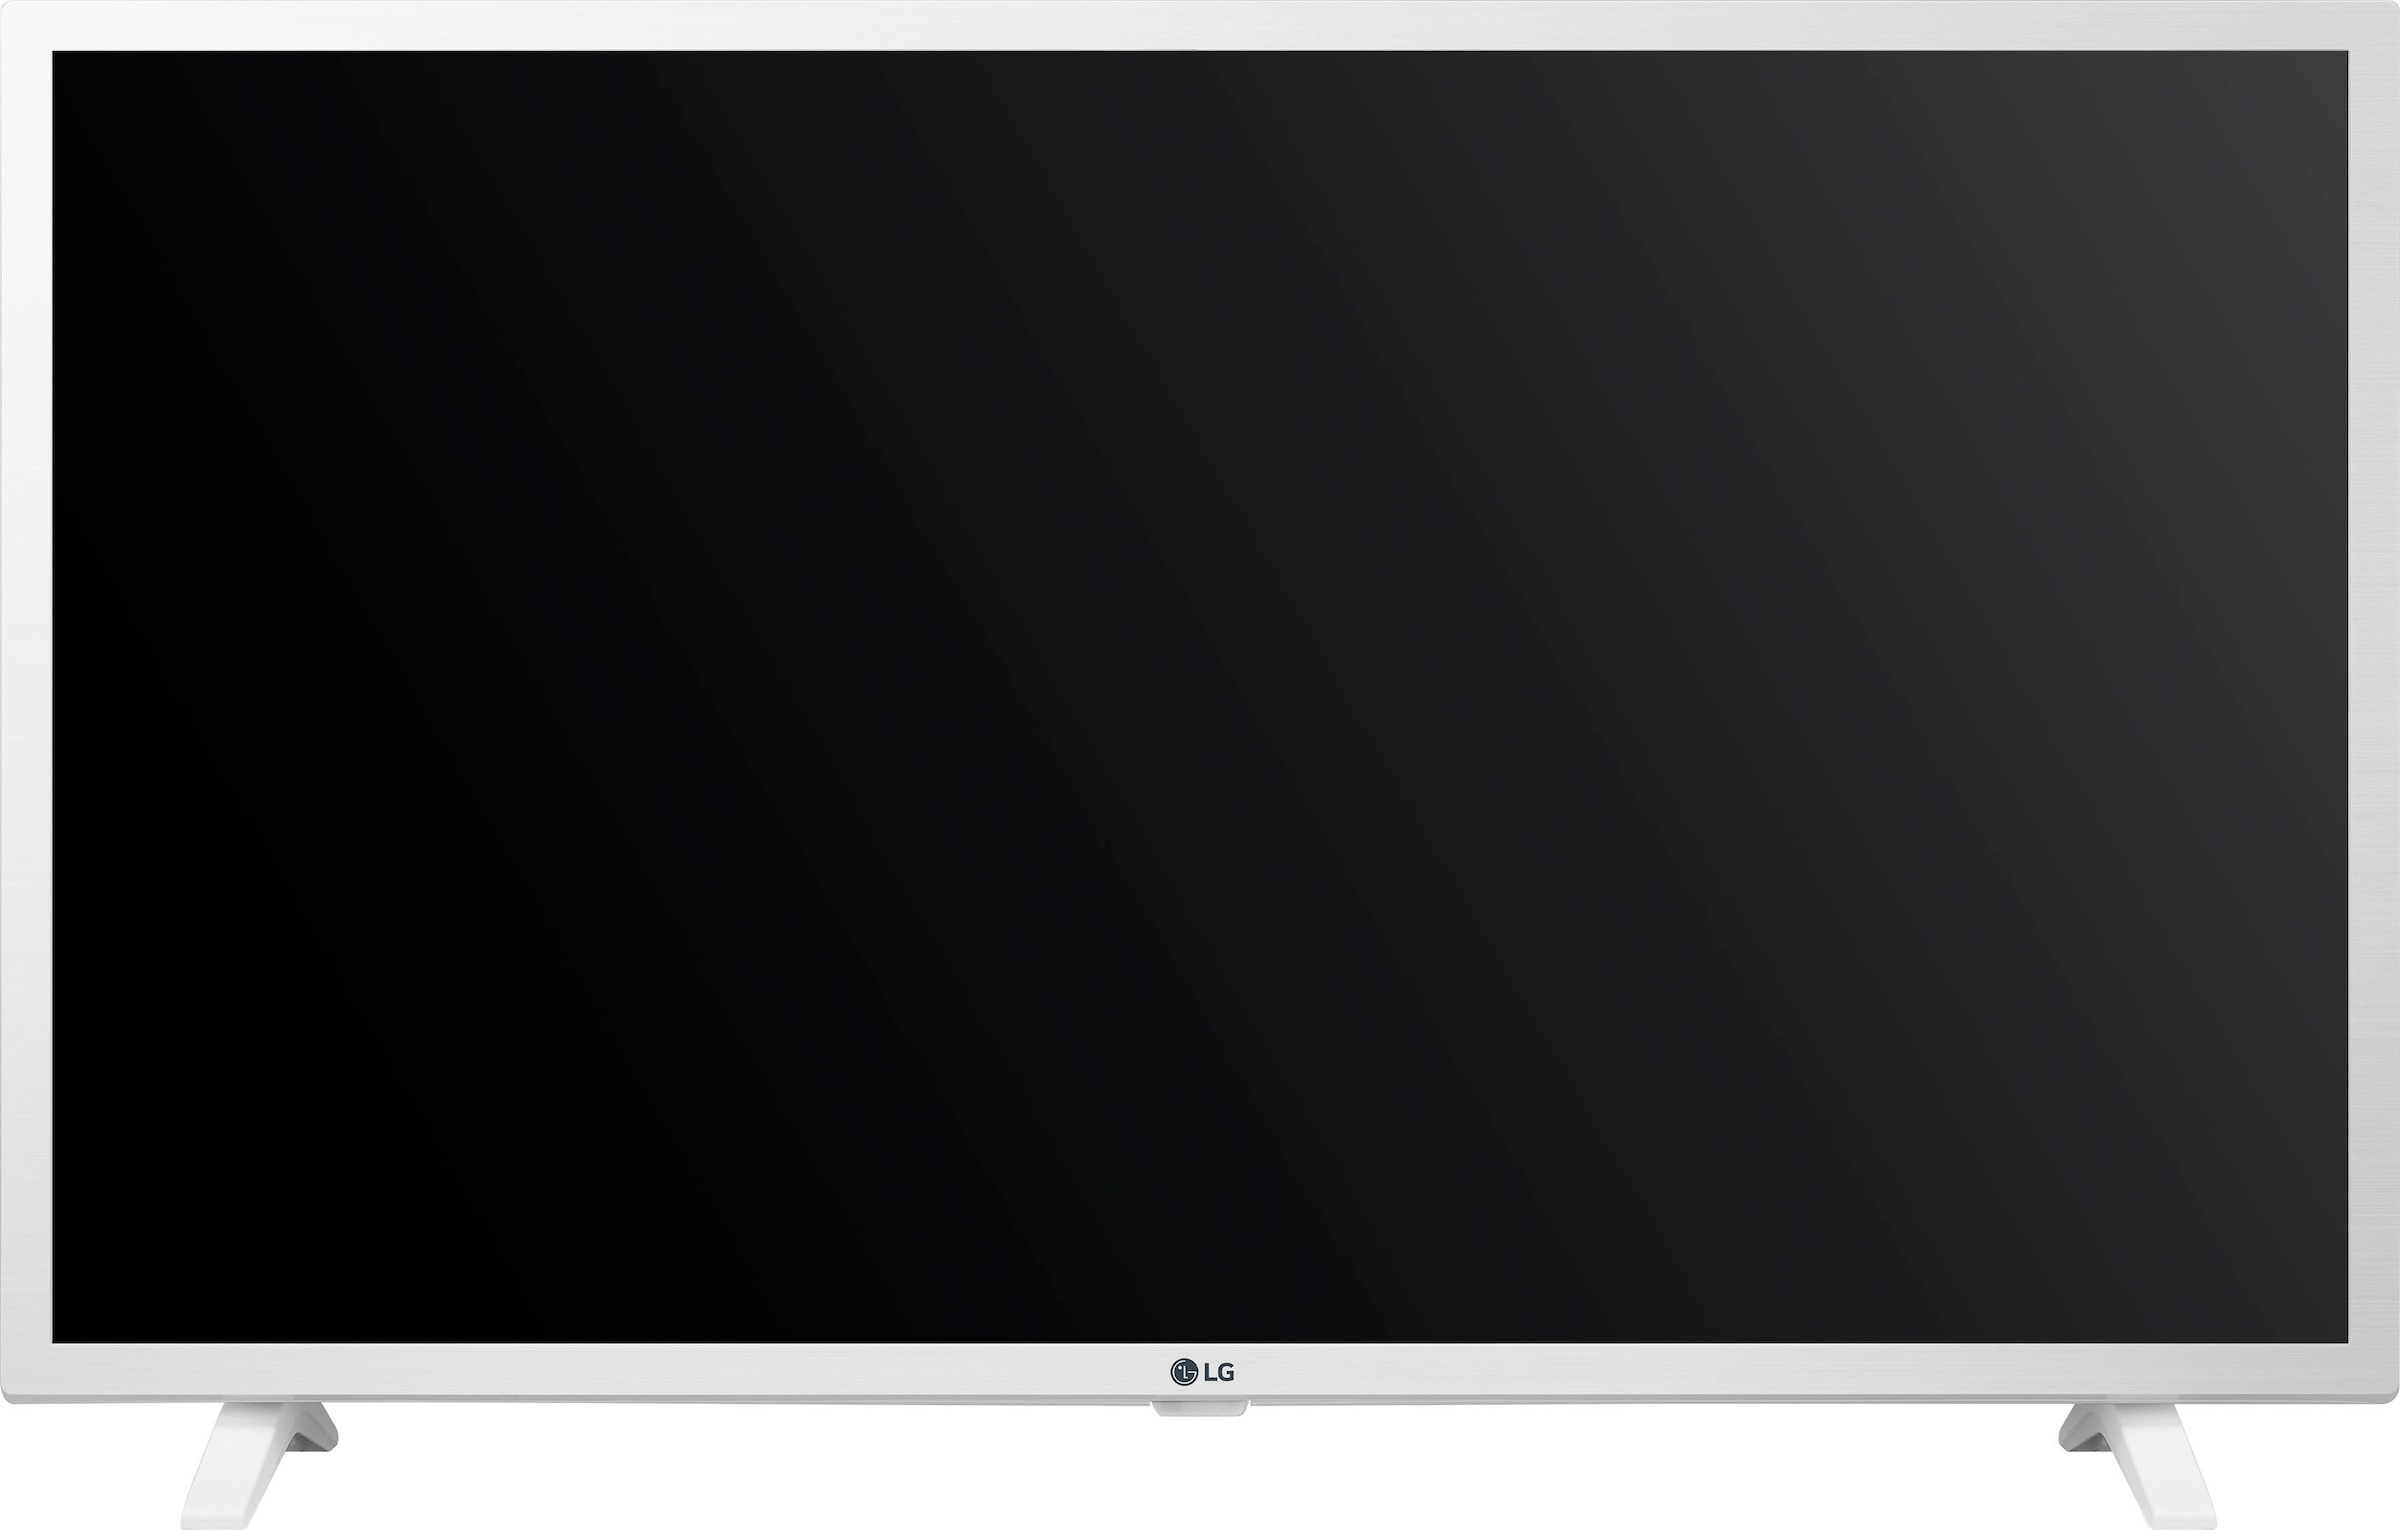 LG LED-Fernseher, 80 cm/32 Zoll, Full HD, Smart-TV